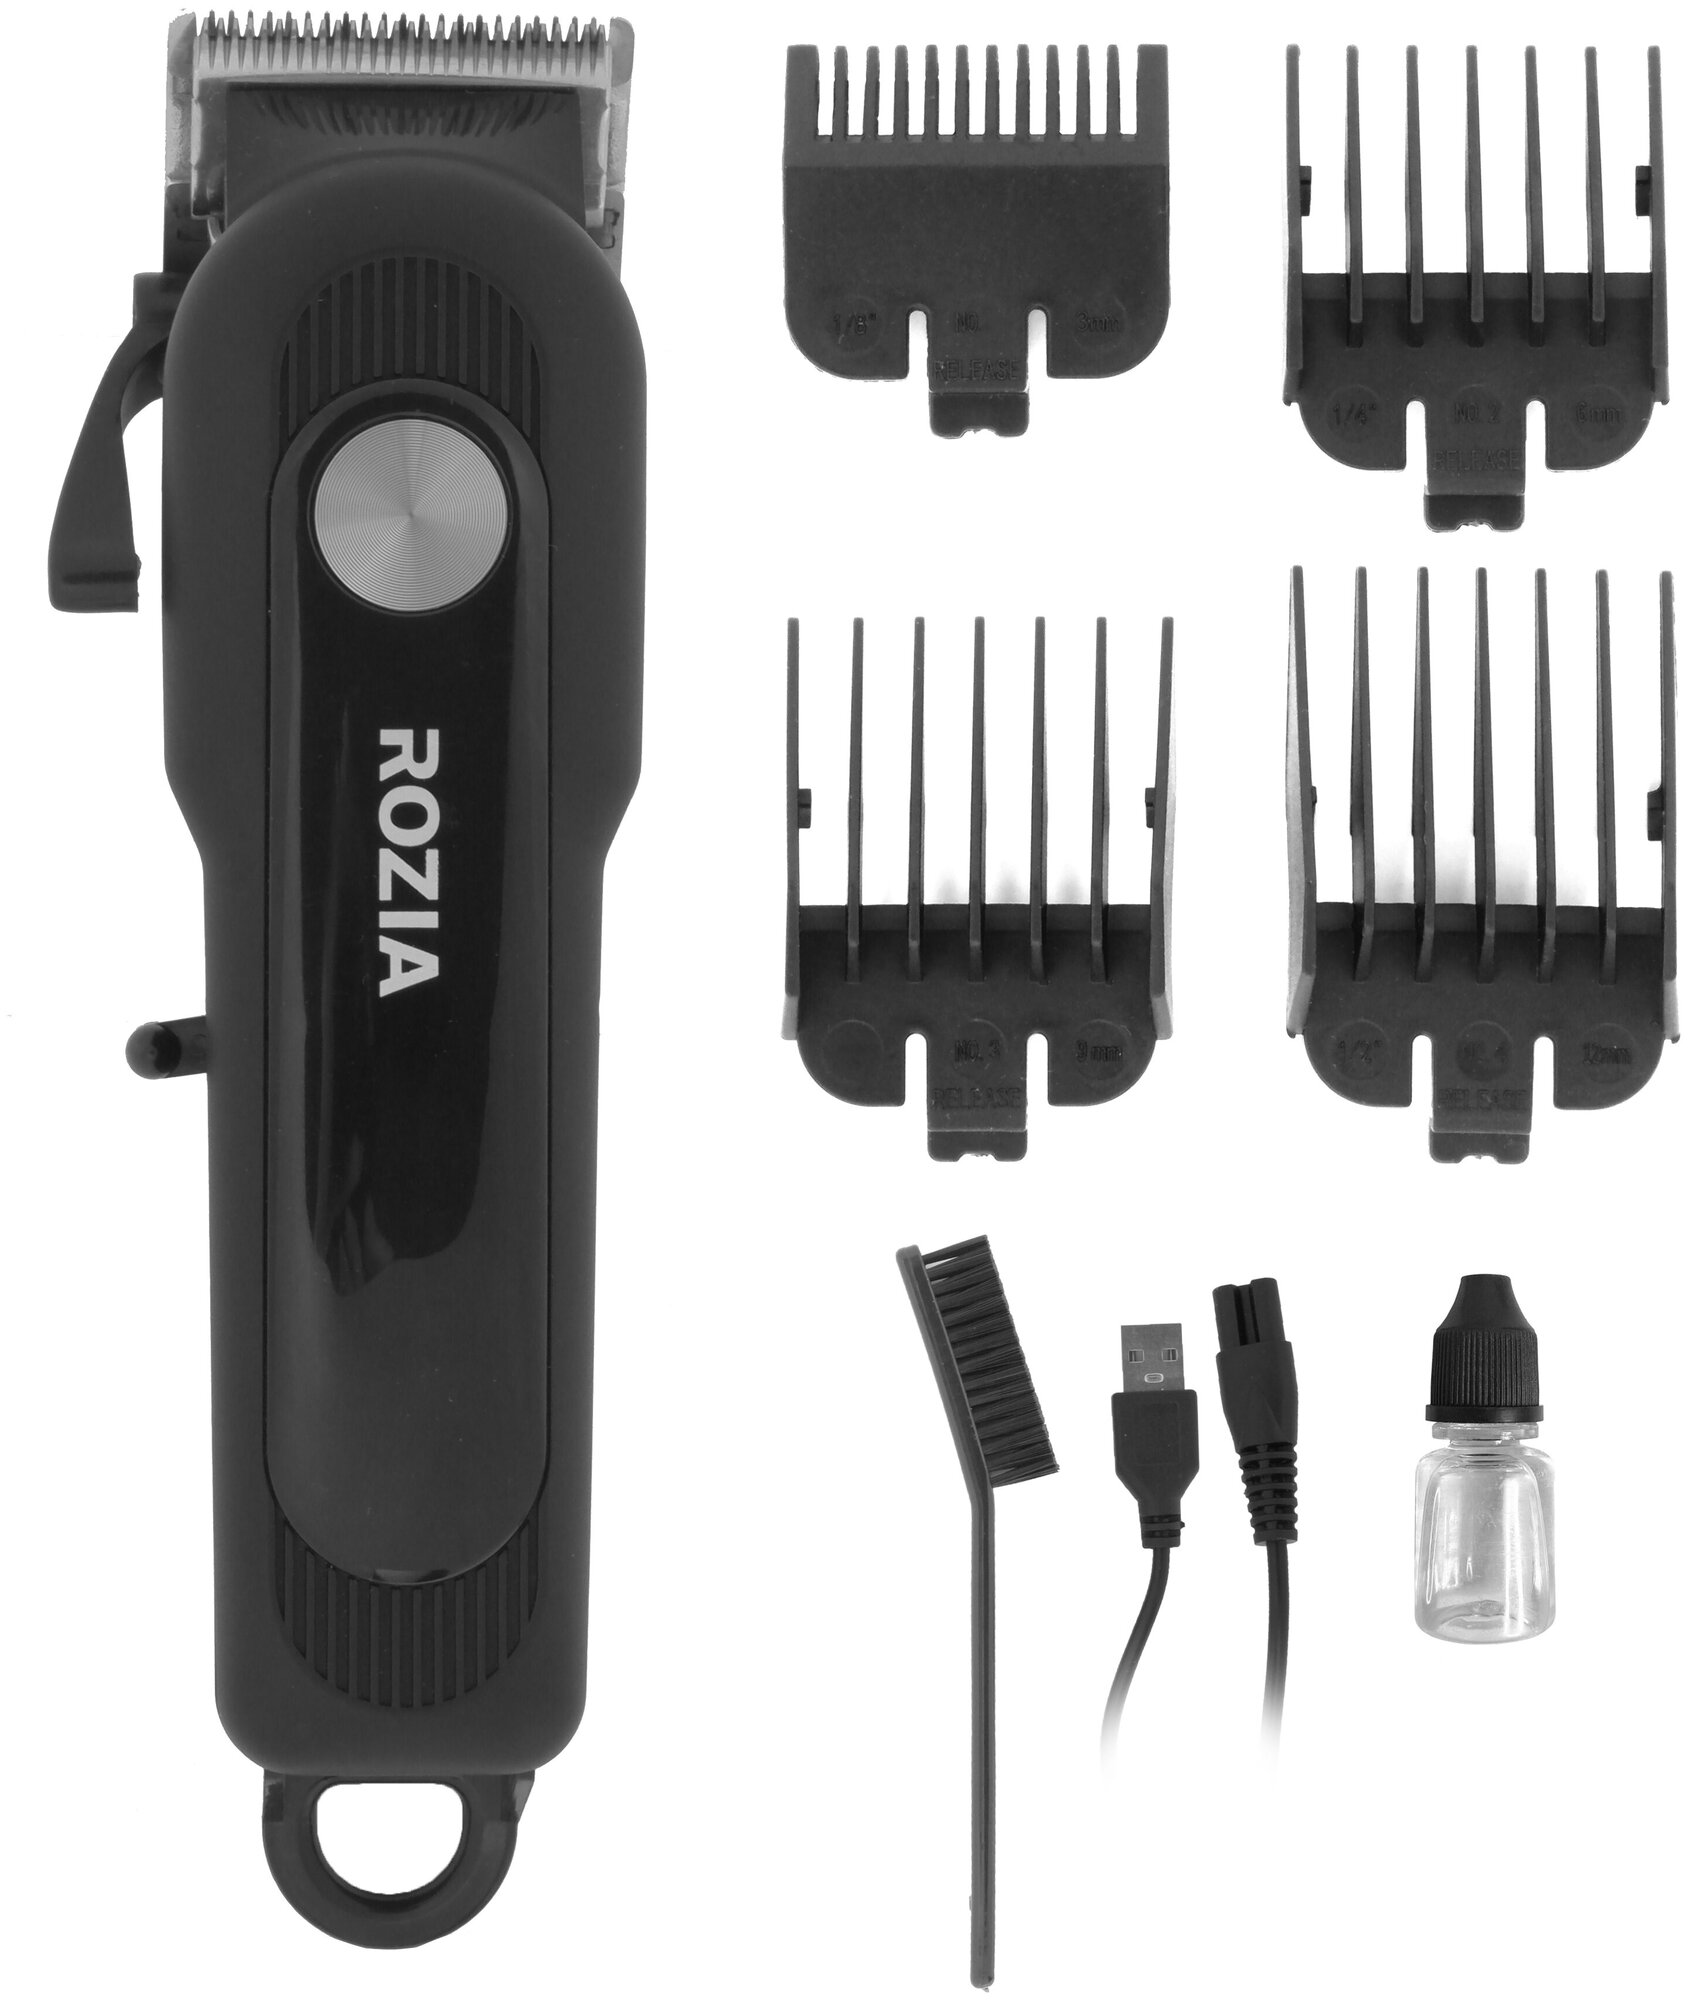 Машинка для стрижки Rozia HQ-2223 Триммер для стрижки волос, бороды и усов с регулятором и LCD дисплеем, 4 насадки, черный